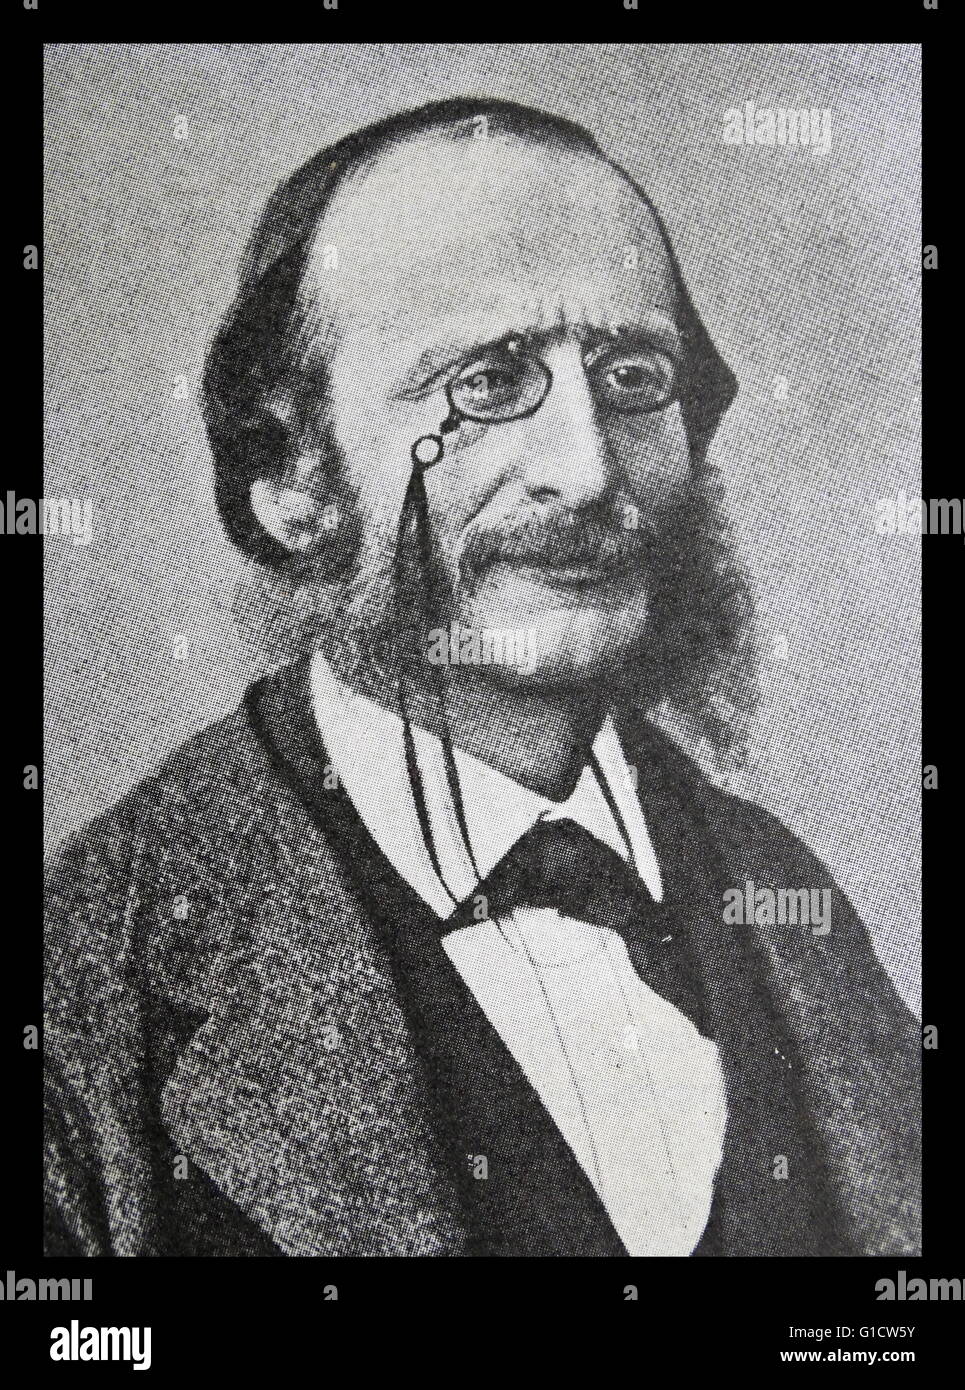 Ritratto fotografico di Jacques Offenbach (1819-1880) tedesco-nato, compositore francese, violoncellista e impresario del periodo romantico. Datata del XIX secolo Foto Stock